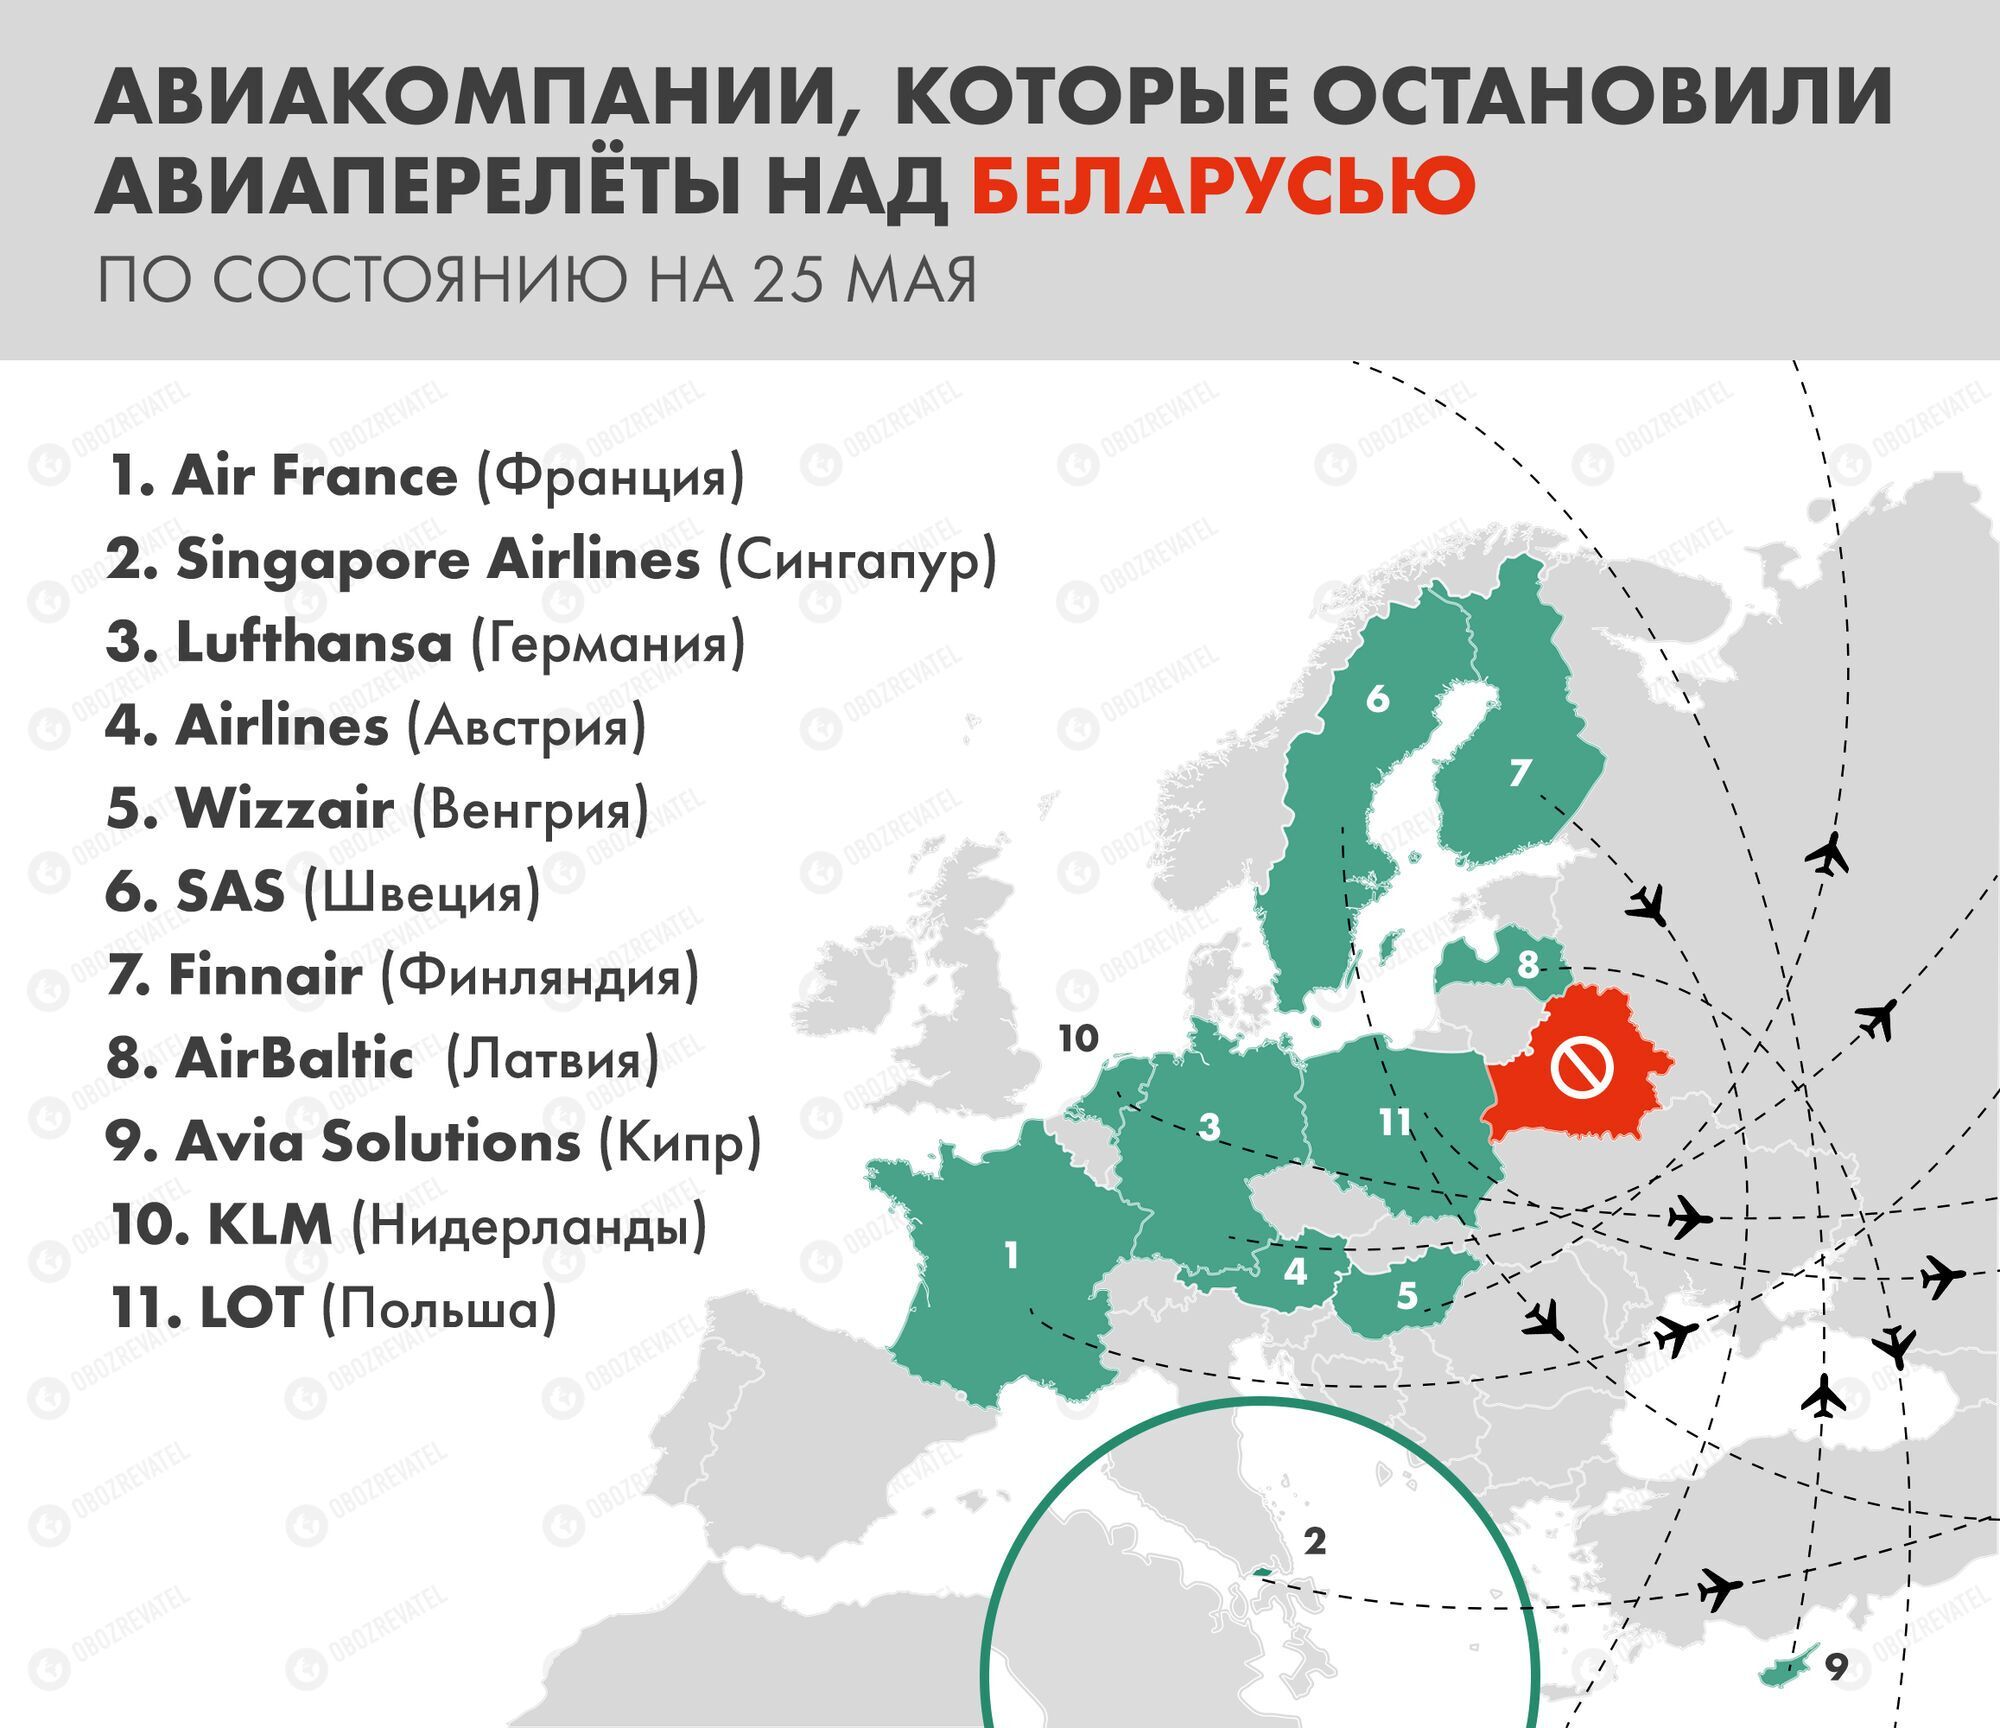 Список авиакомпаний, прекративших полеты над Беларусью